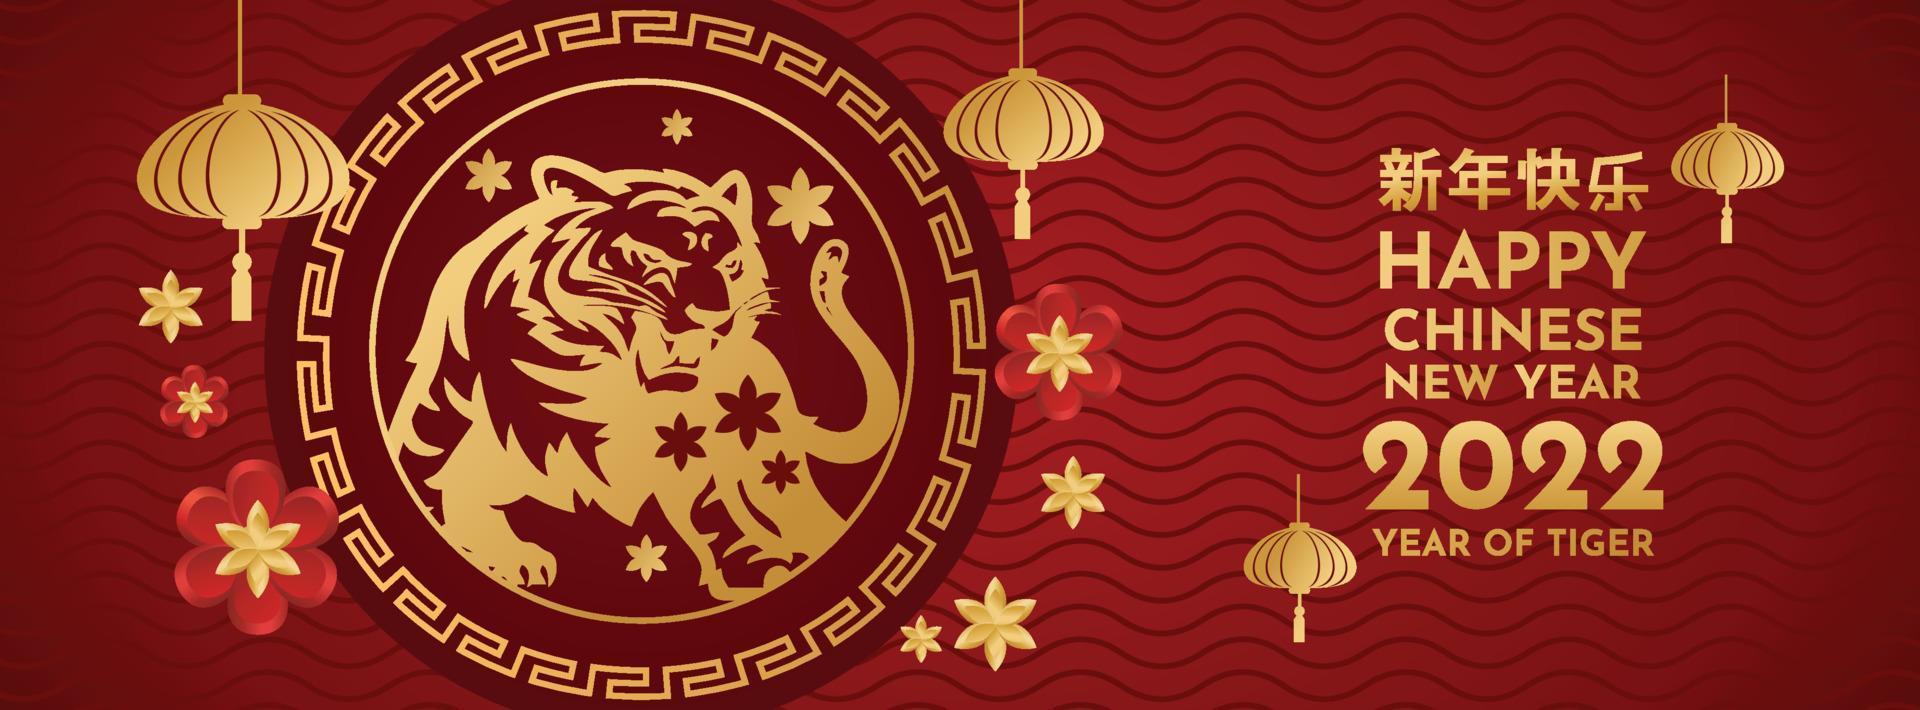 kinesiskt nyår 2022 år av tigern röd och guldblomma och asiatiska element på bakgrunden. översättning kinesiskt nyår 2022, tigerns år vektor